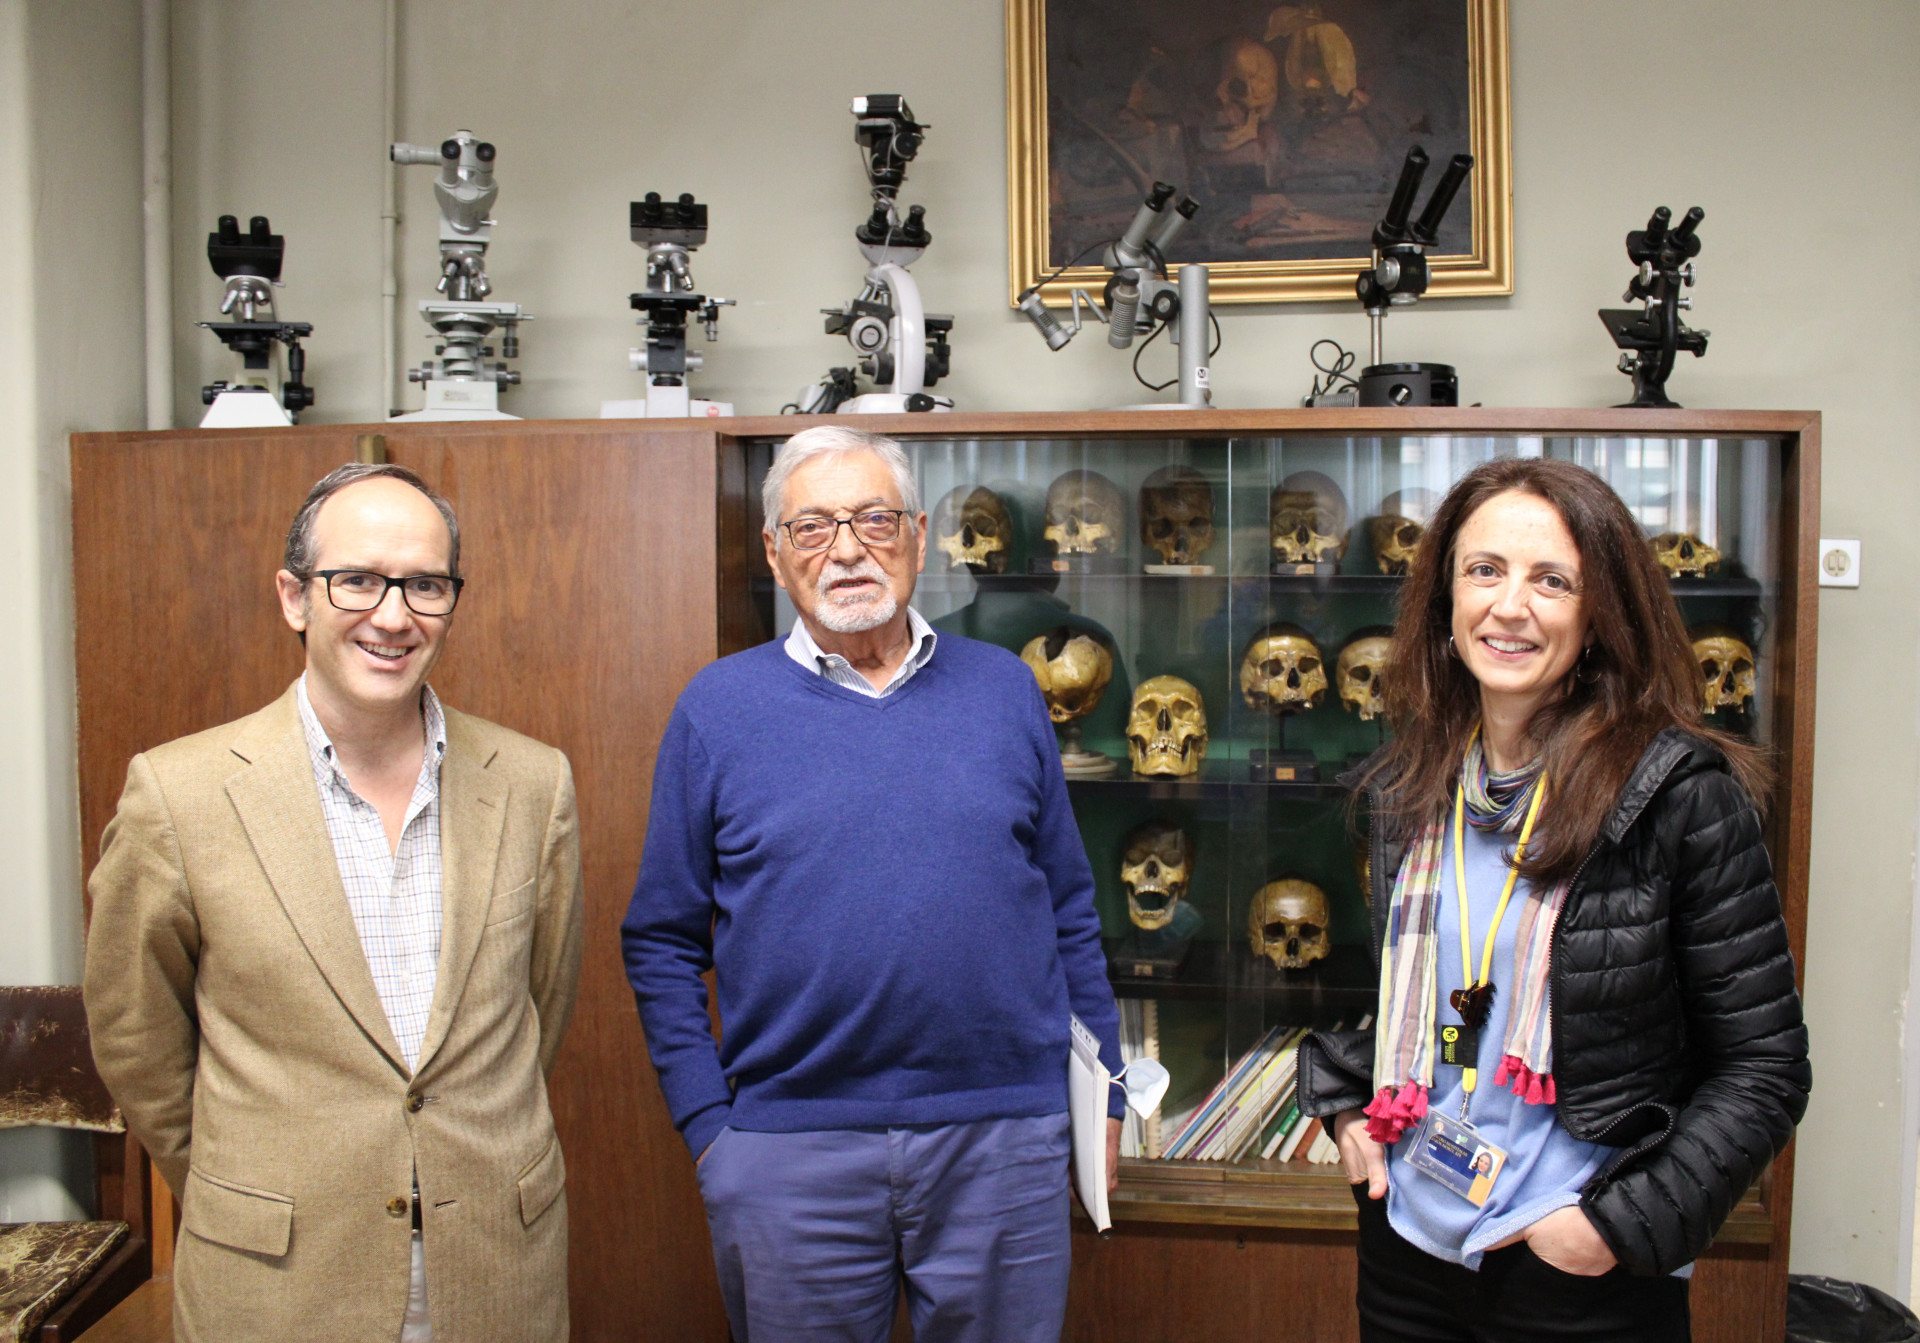 dois homens e uma mulher sorriem em frente de montra com crânios antigos, que eram usados para estudar anatomia